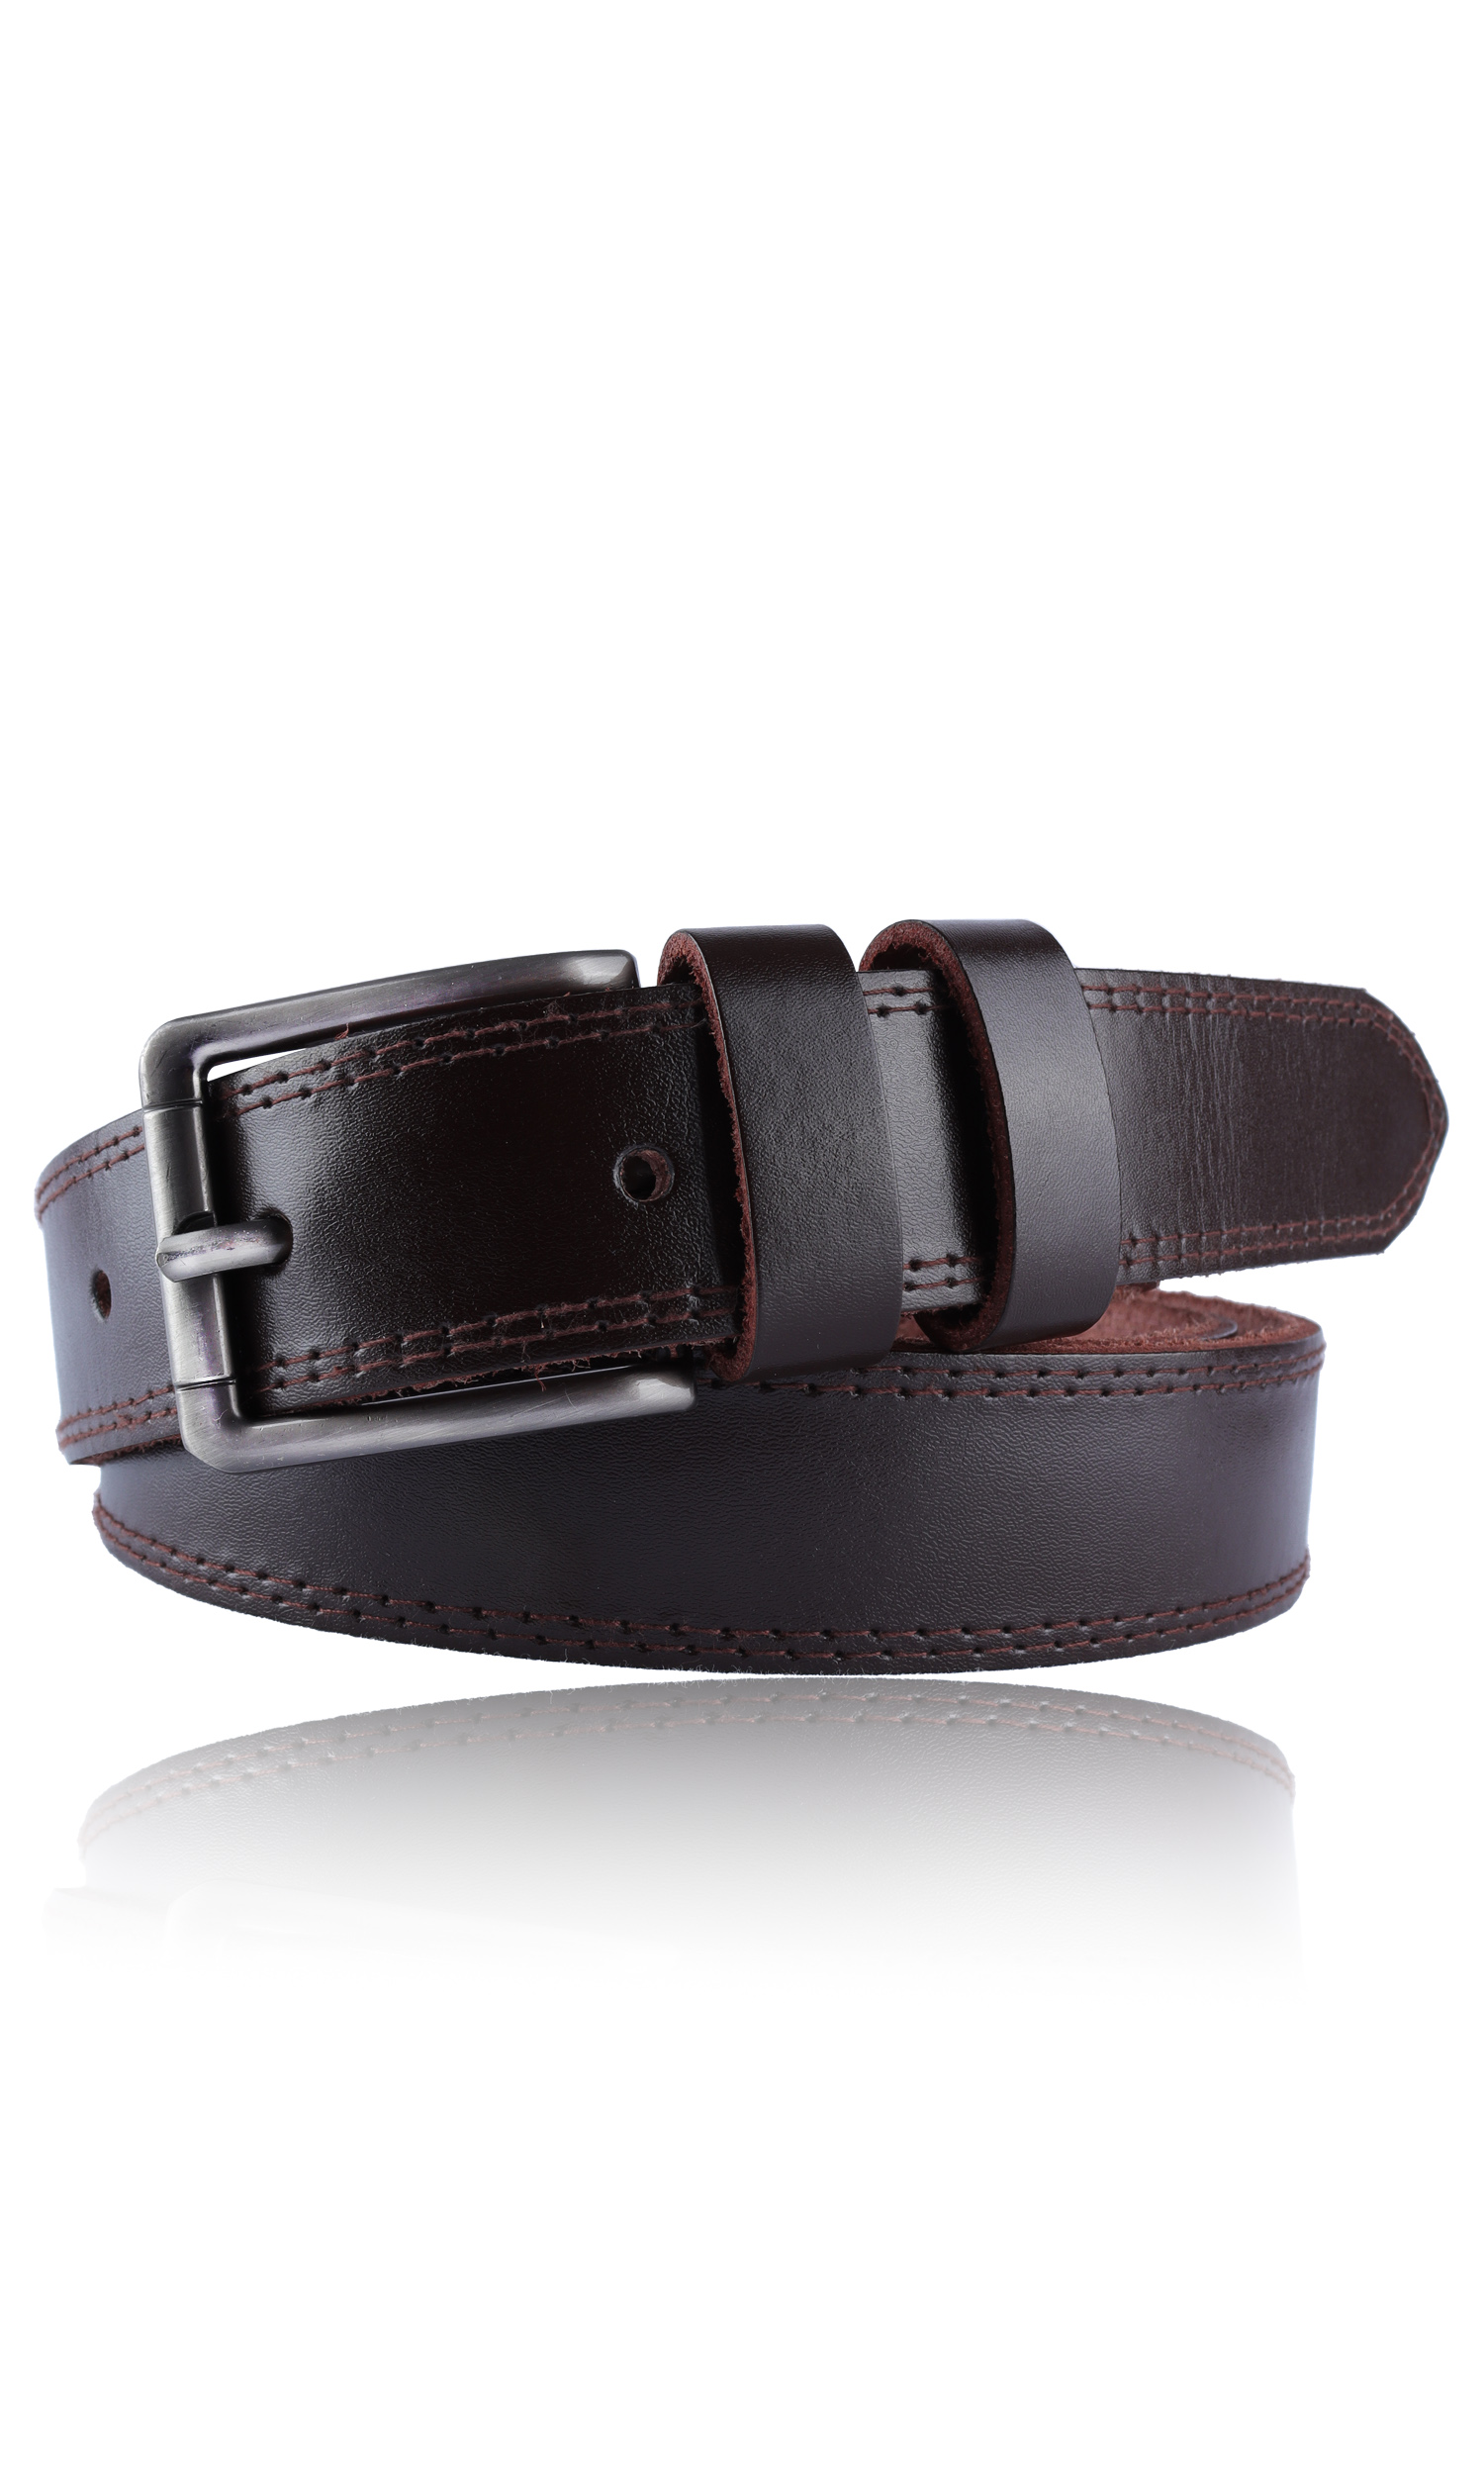 Maroon Leather belt in 2 Styles